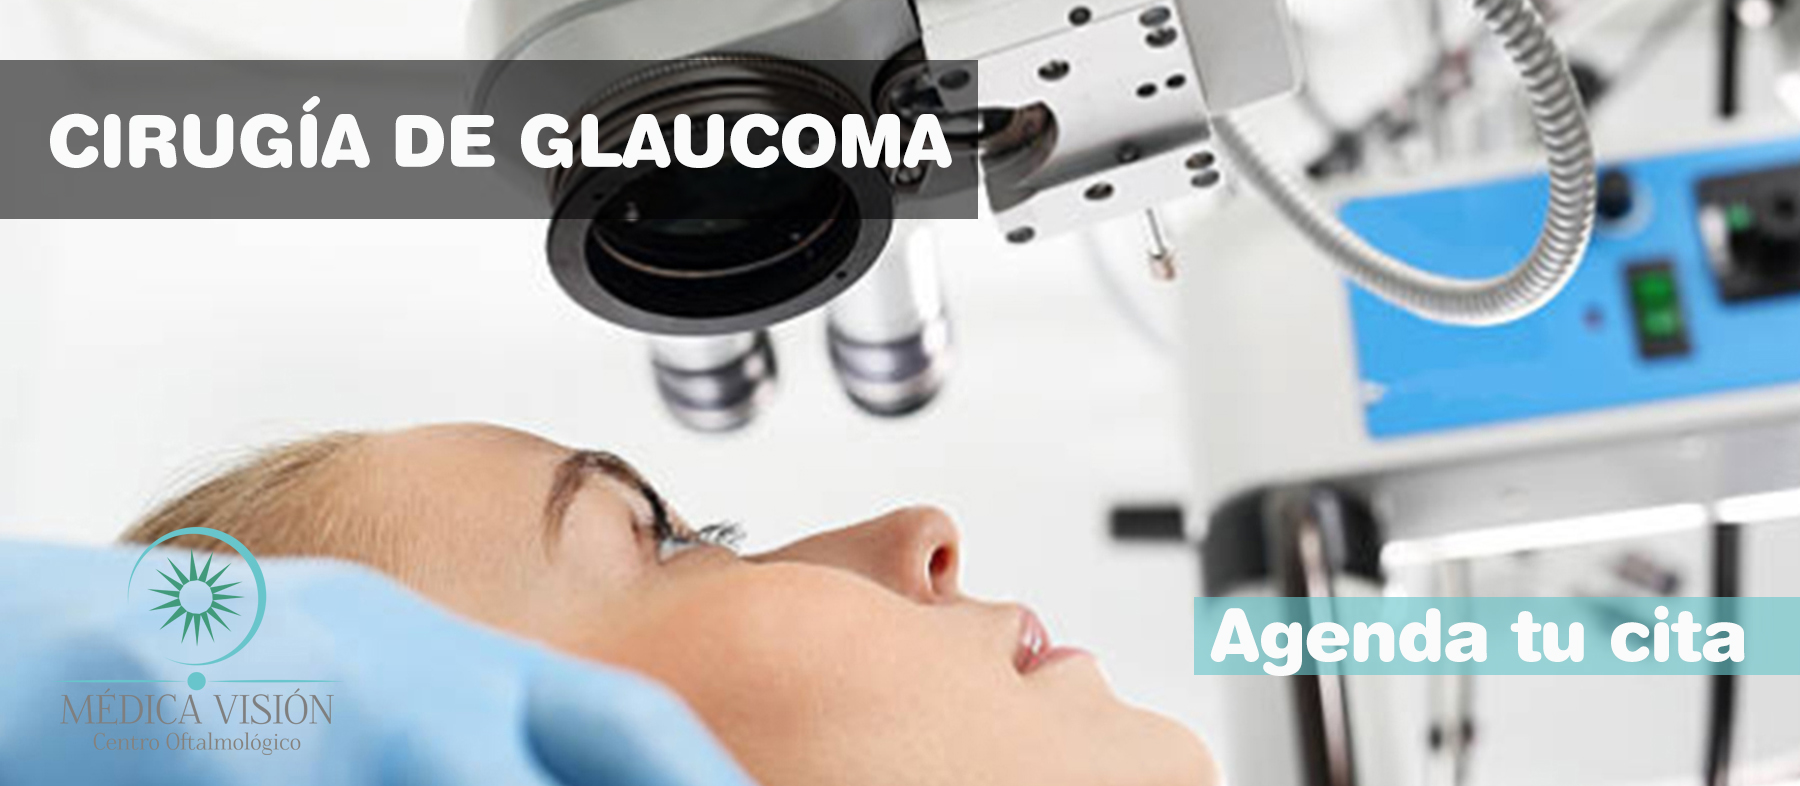  cirugia de glaucoma 